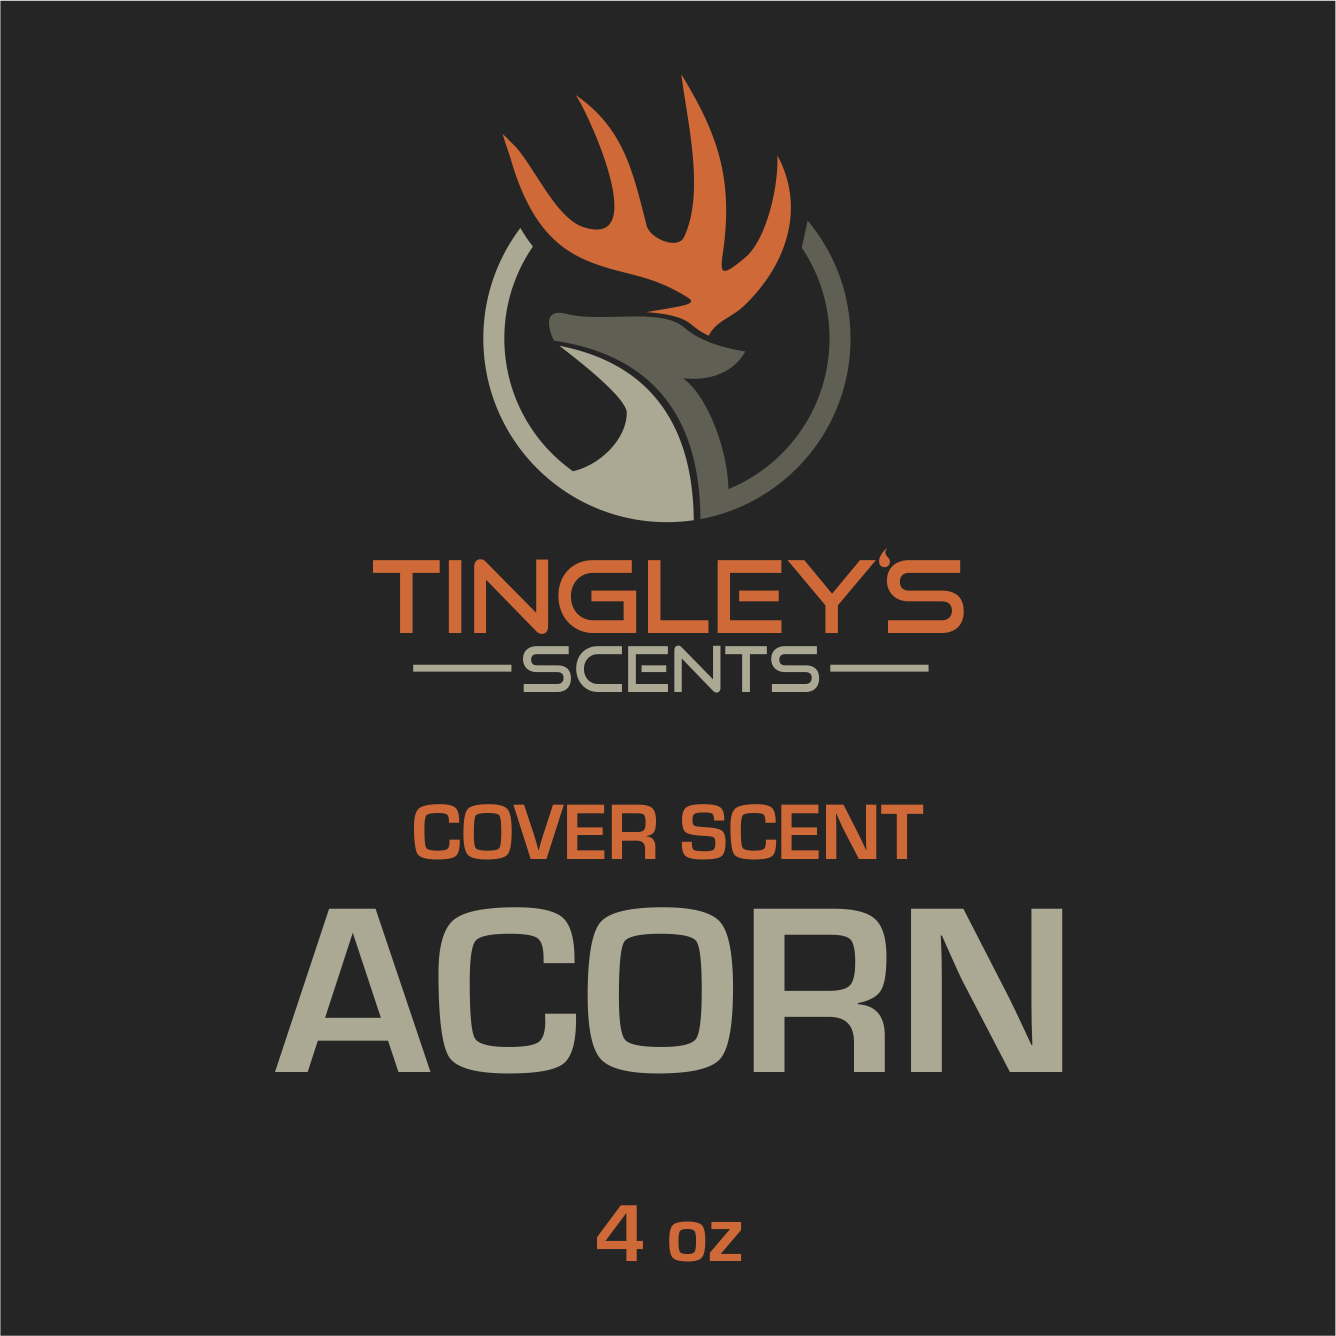 ACORN Cover Scent